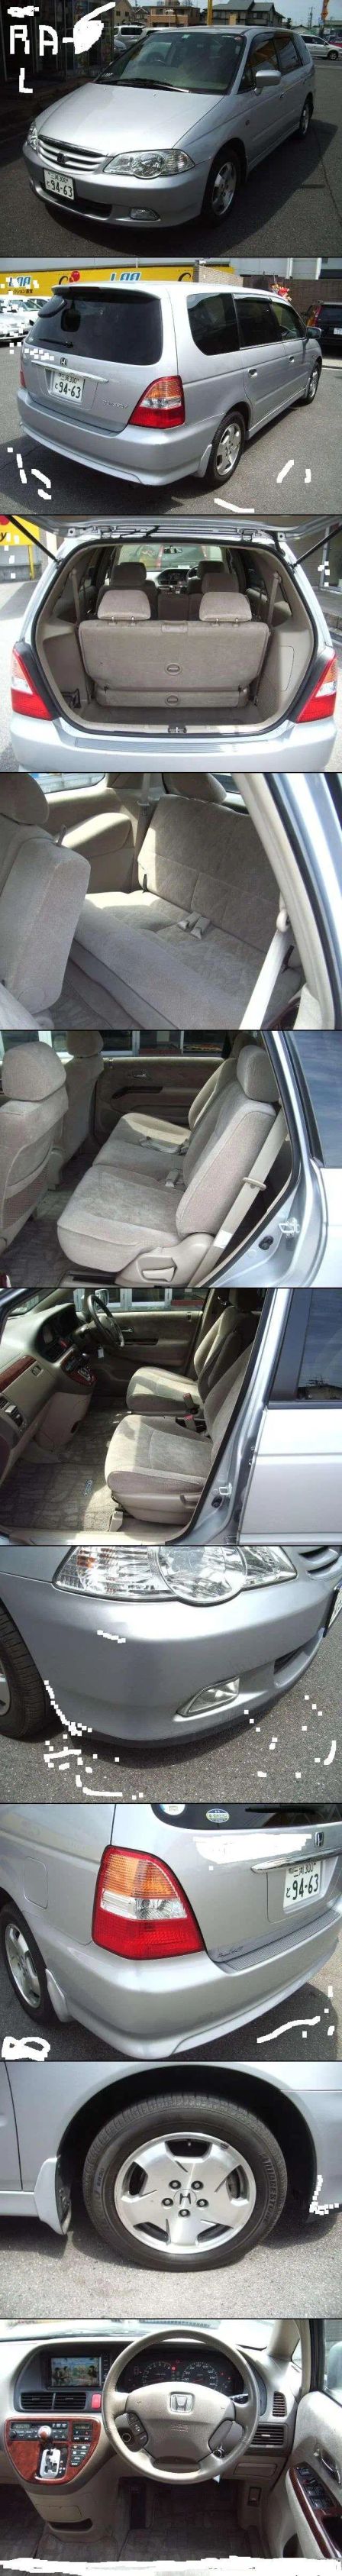 Honda Odyssey 2000 -  